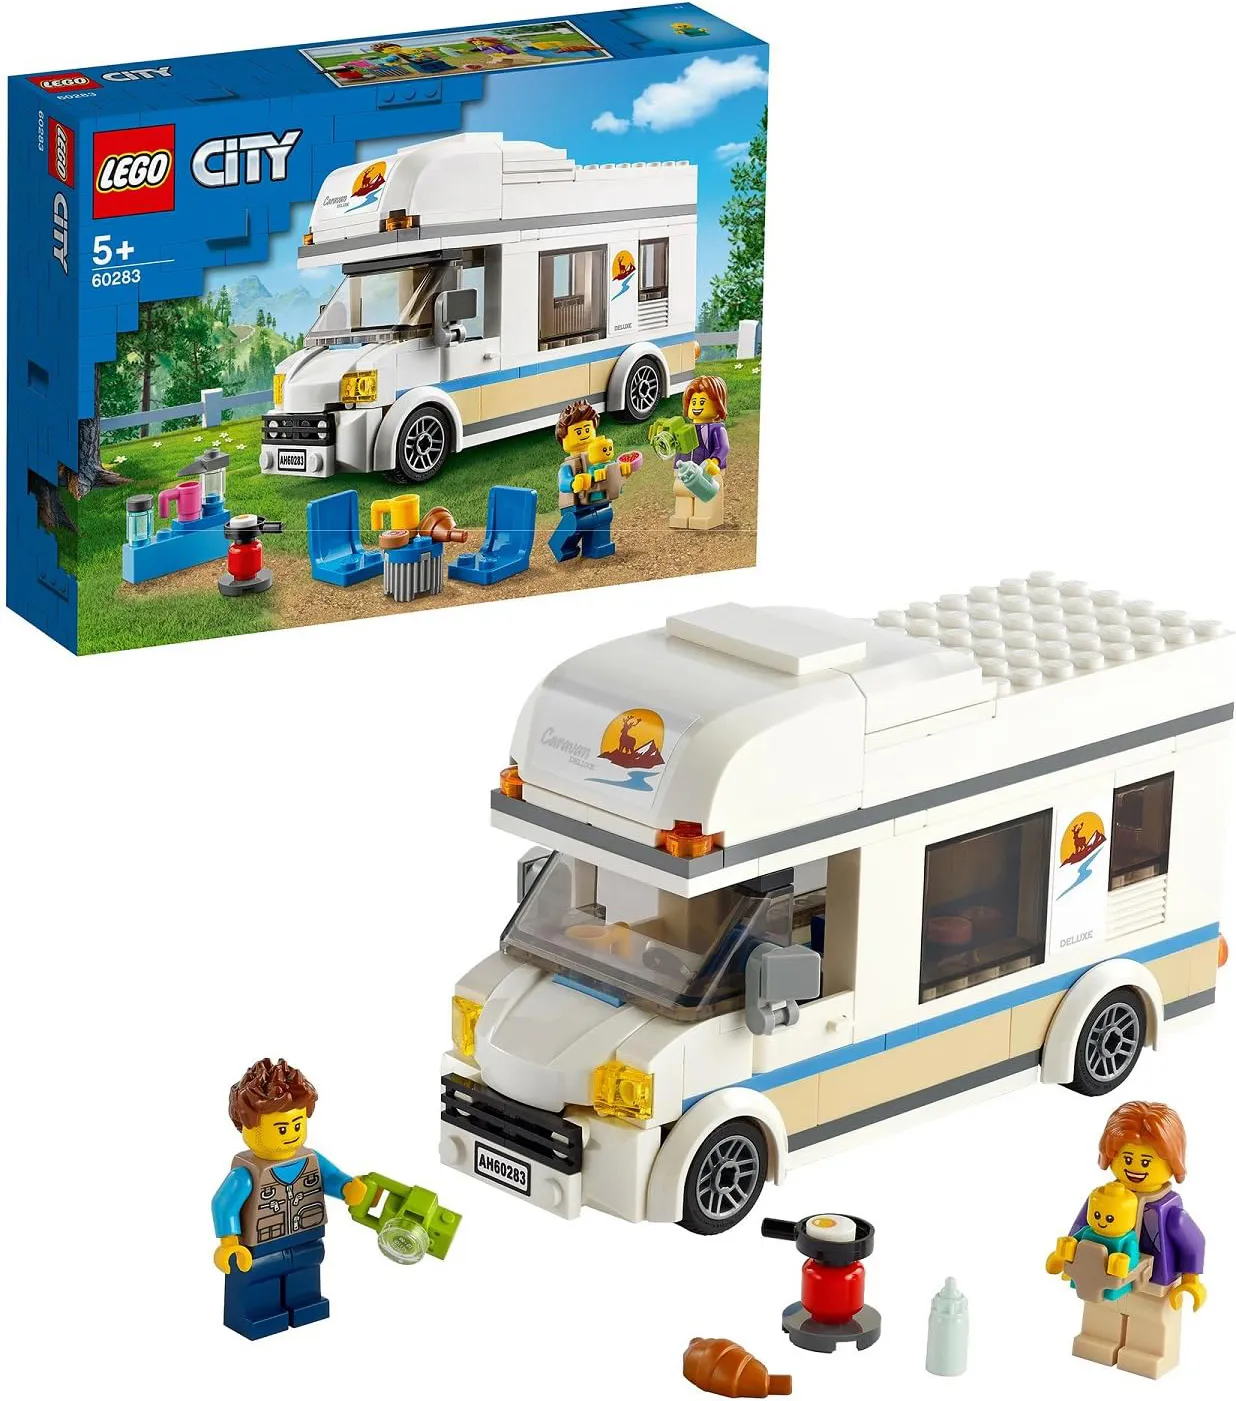 lego City - Camper delle Vacanze Modellino da Costruire di Roulotte  Giocattolo con Minifigure Costruzioni per Bambini da 5+ Anni - 60283